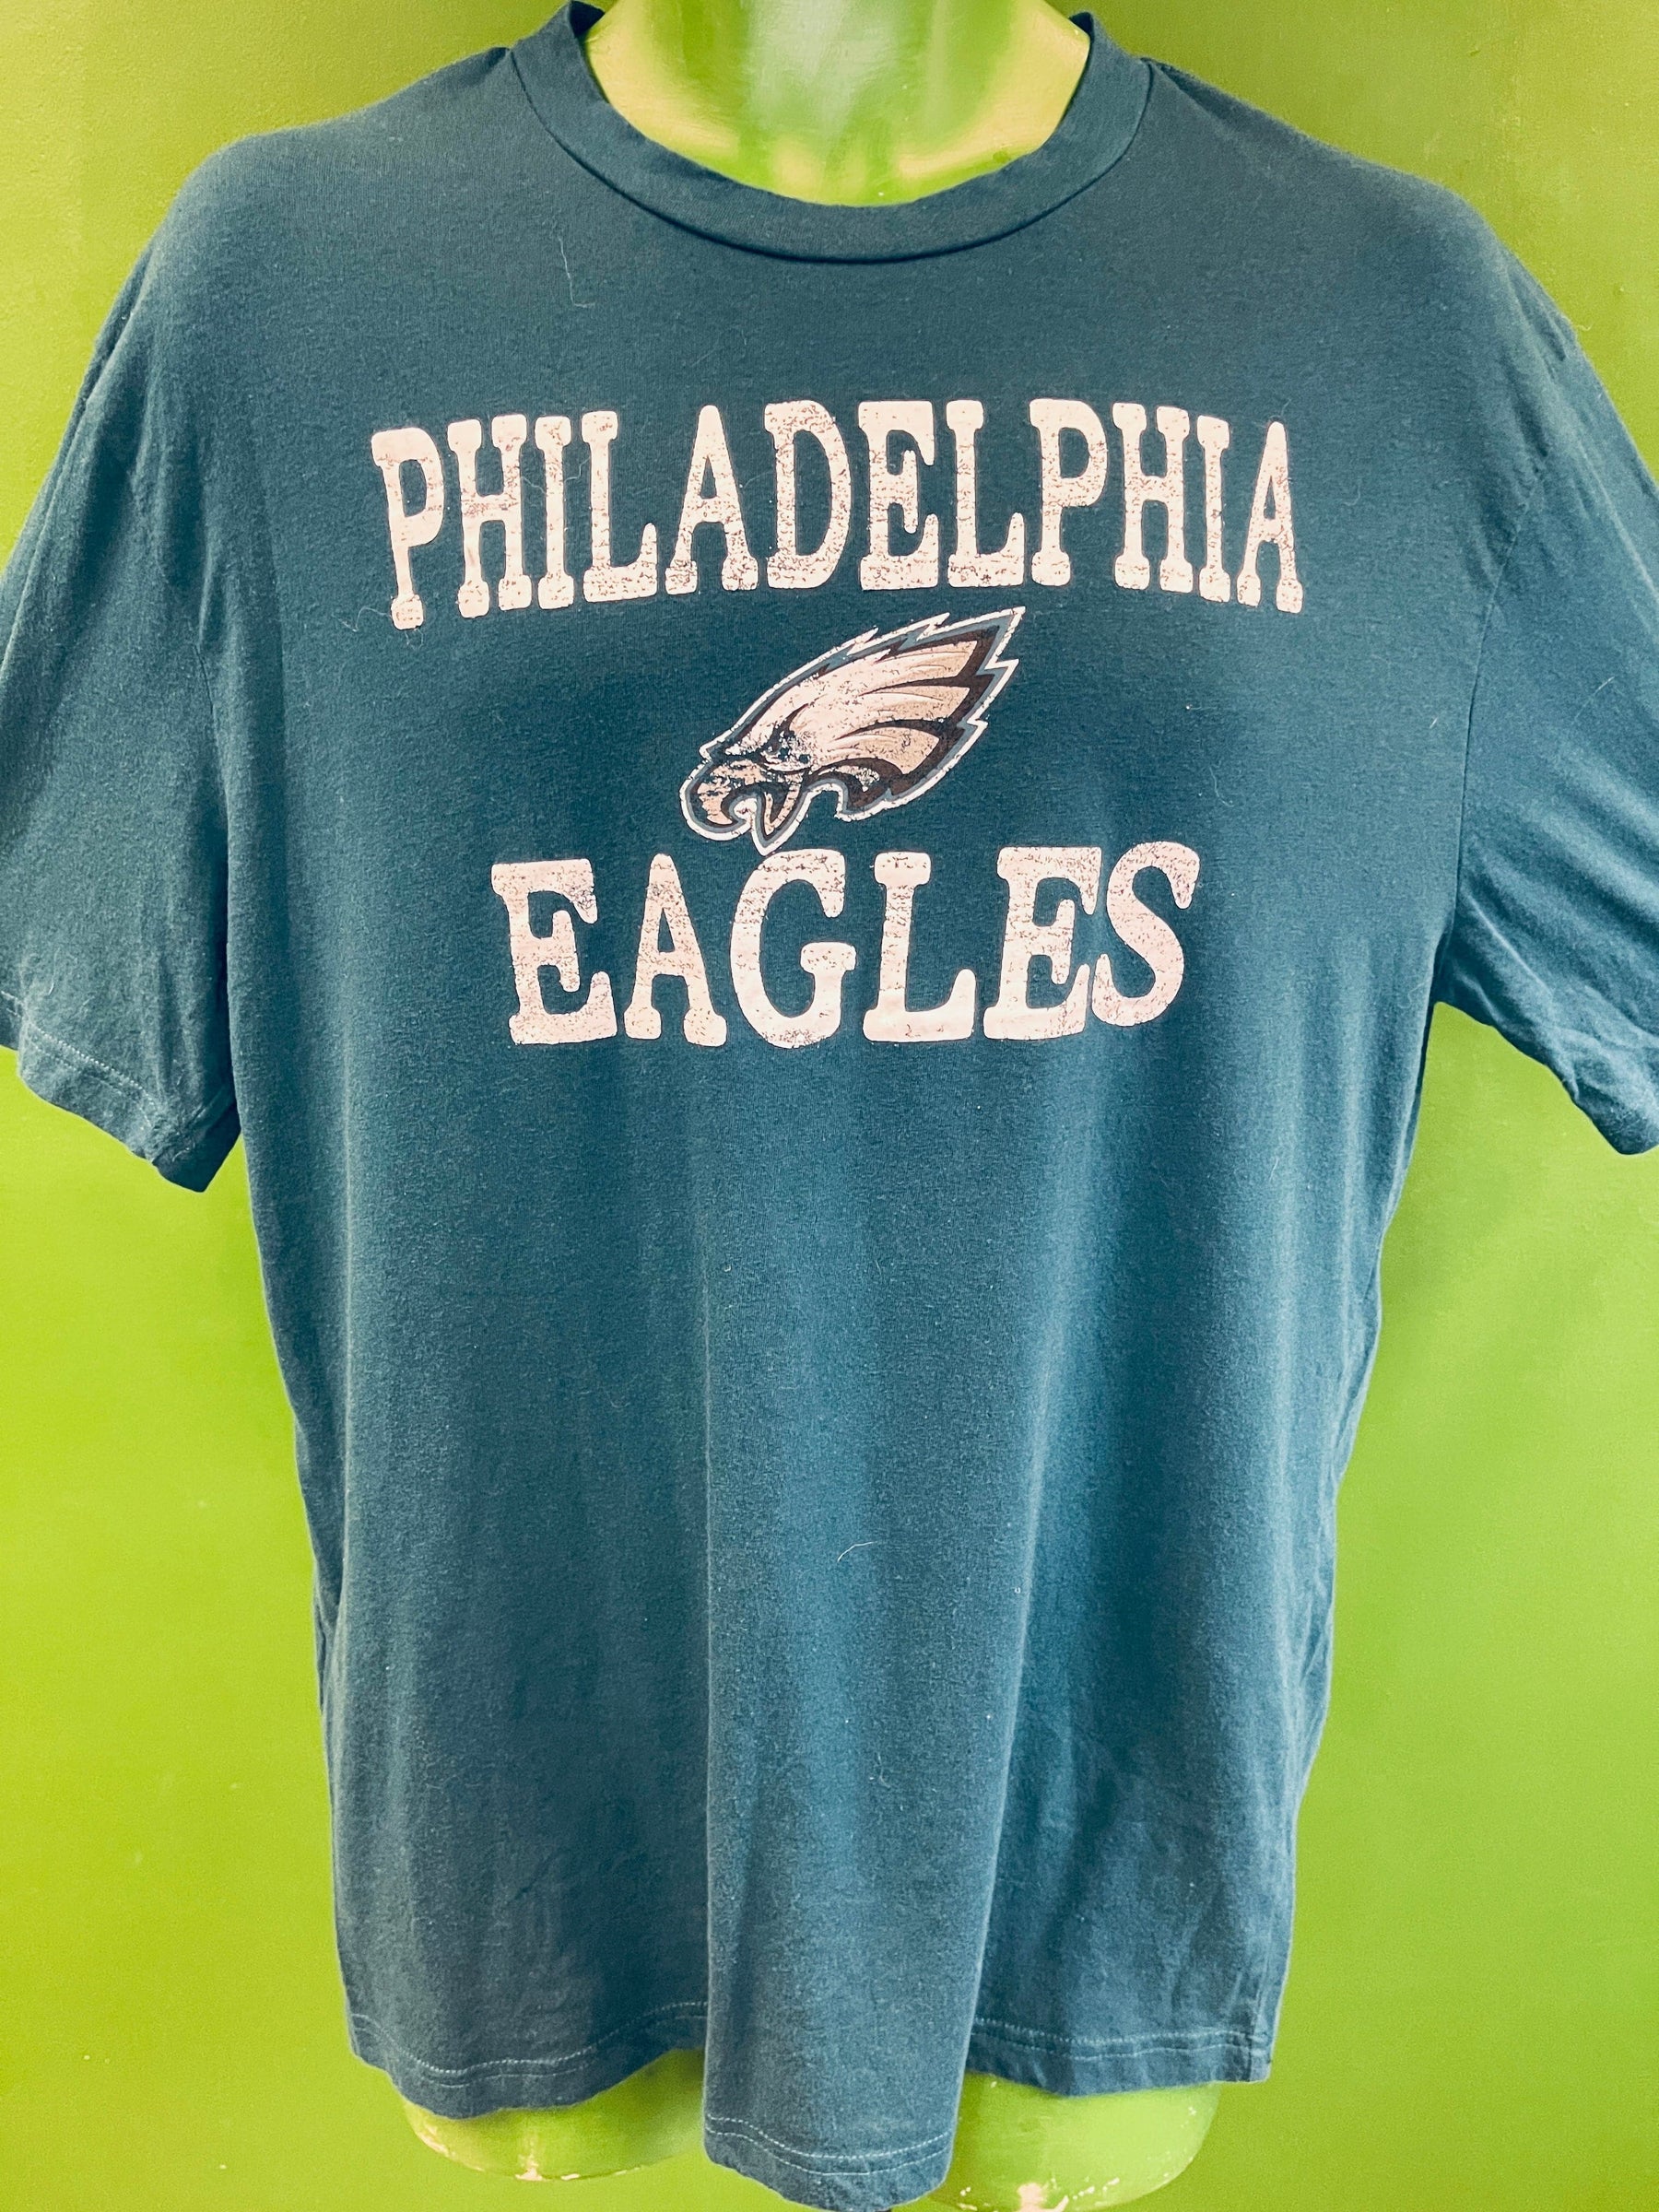 NFL Philadelphia Eagles Distressed Comfy T-Shirt Men's Large